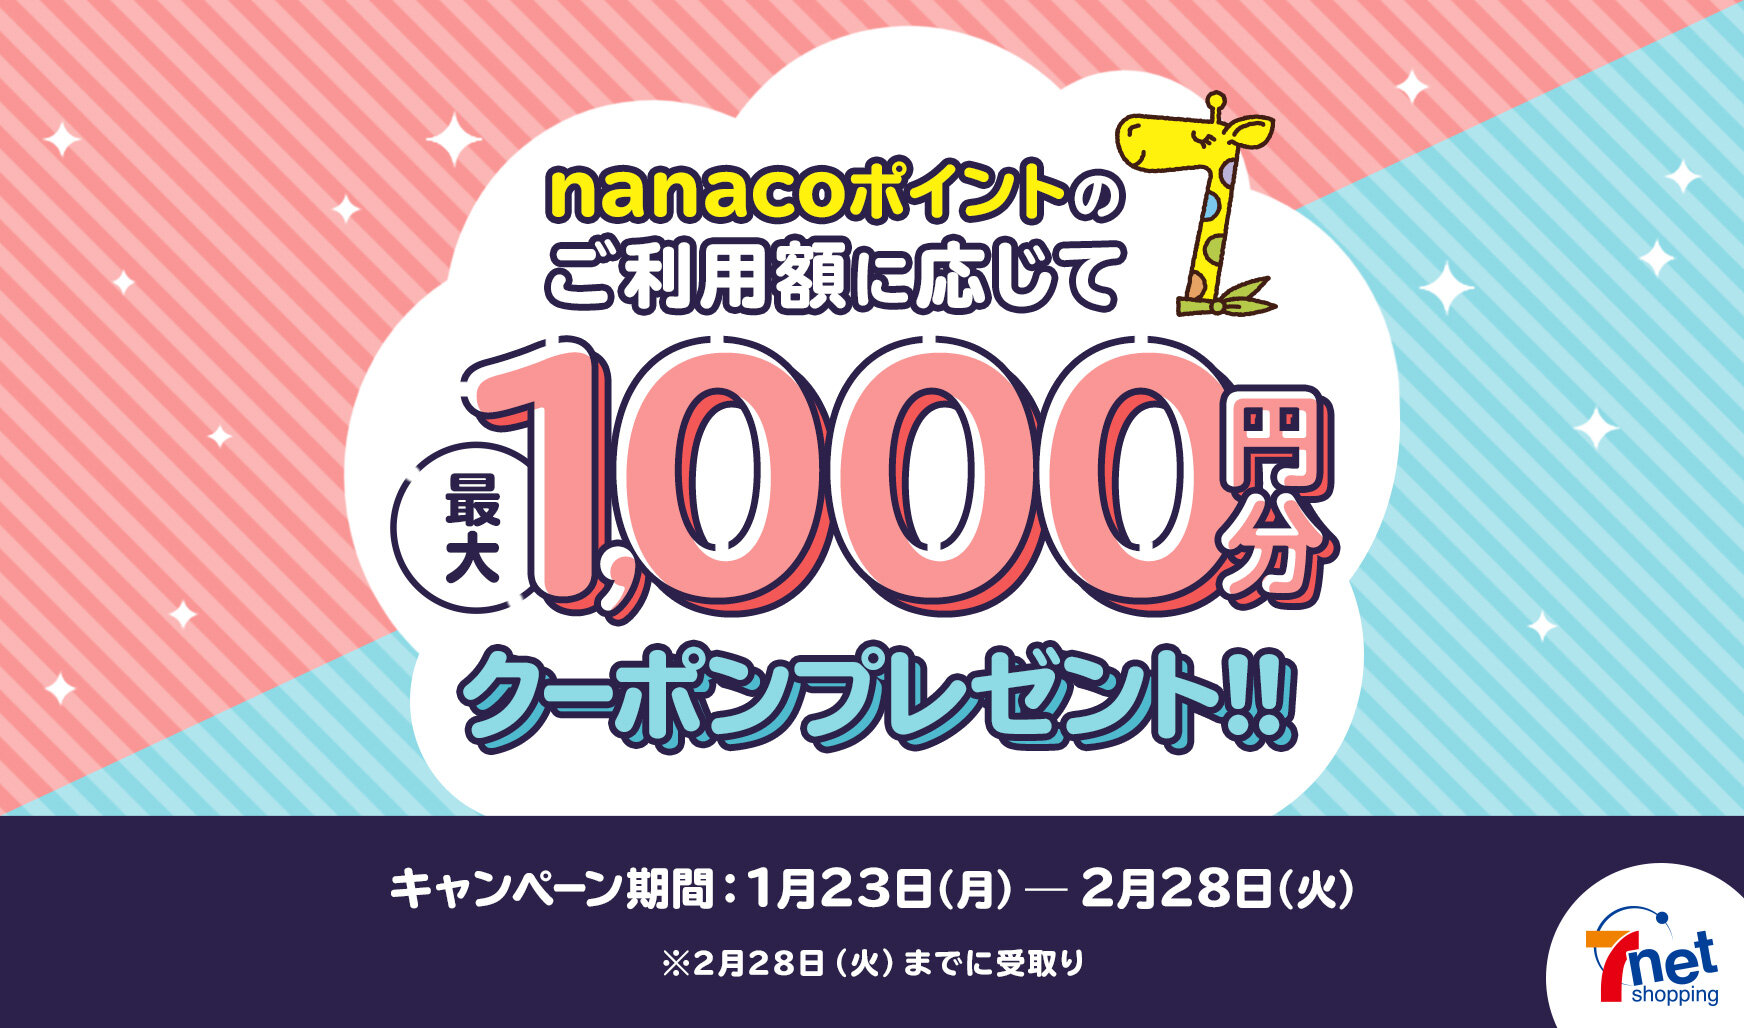 7NS_nanacoポイント利用キャンペーン